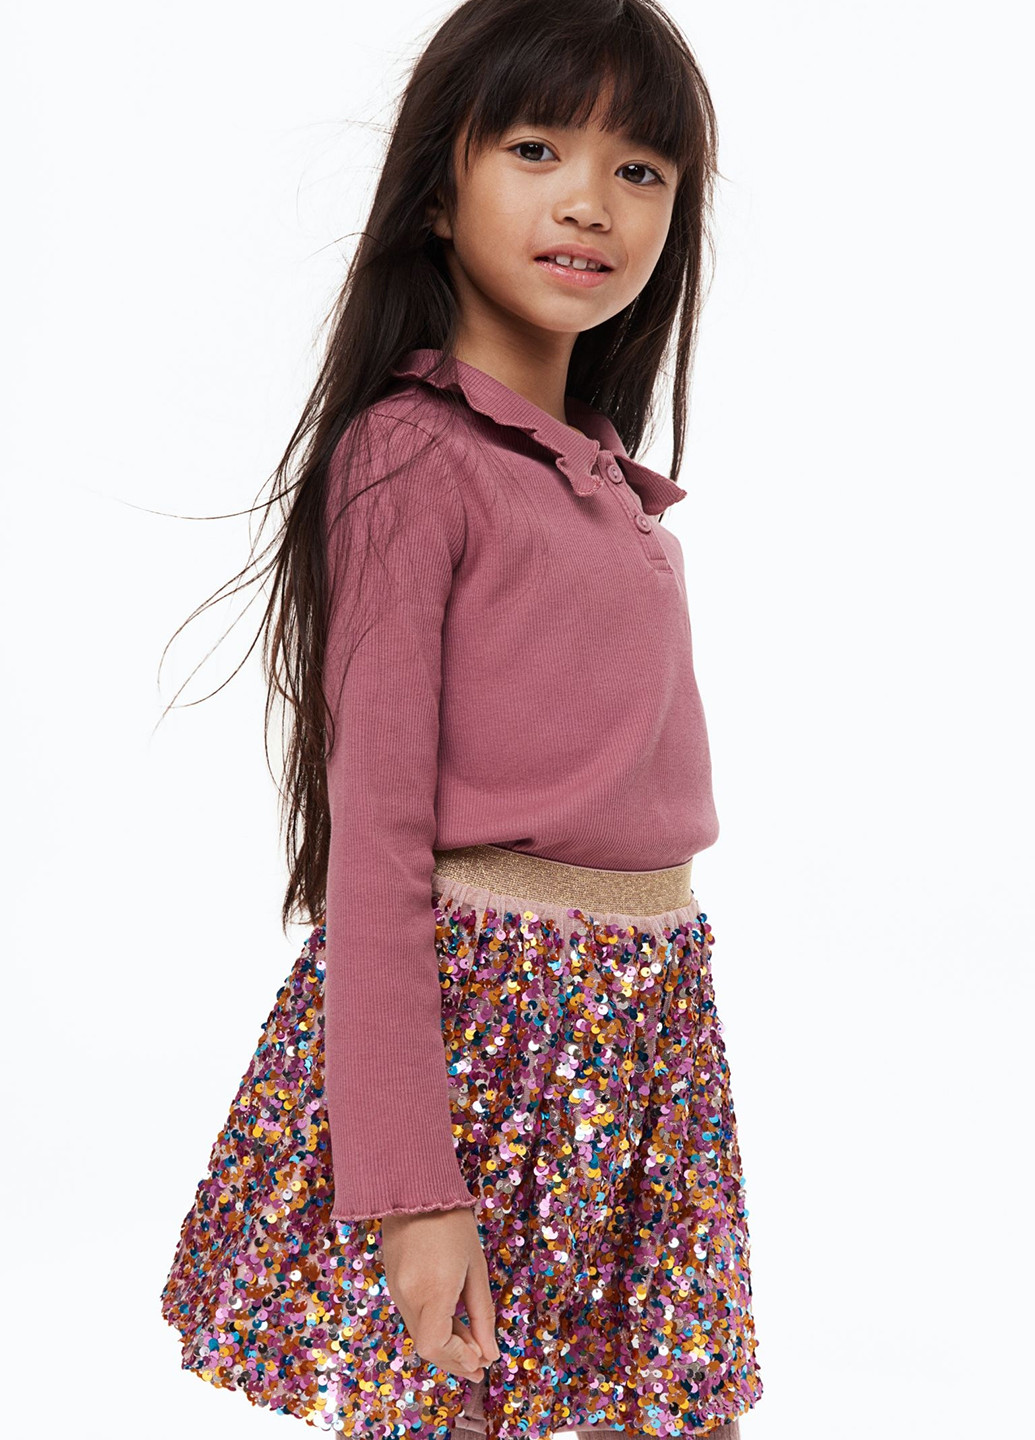 Разноцветная праздничный однотонная юбка H&M клешированная